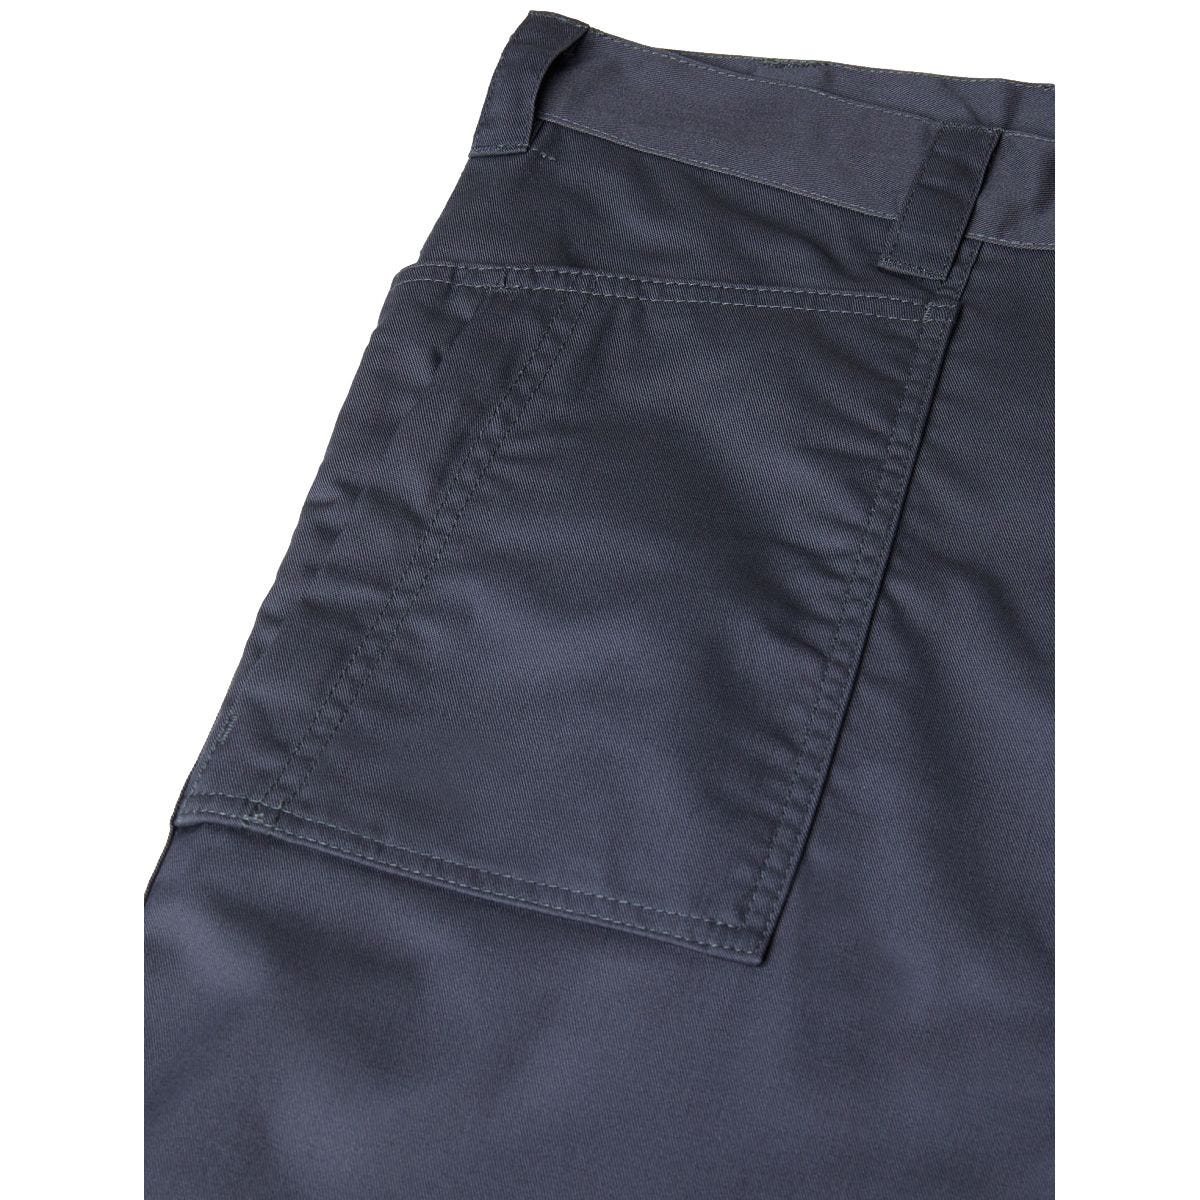 Pantalon de travail Action Flex gris - Dickies - Taille 52 4